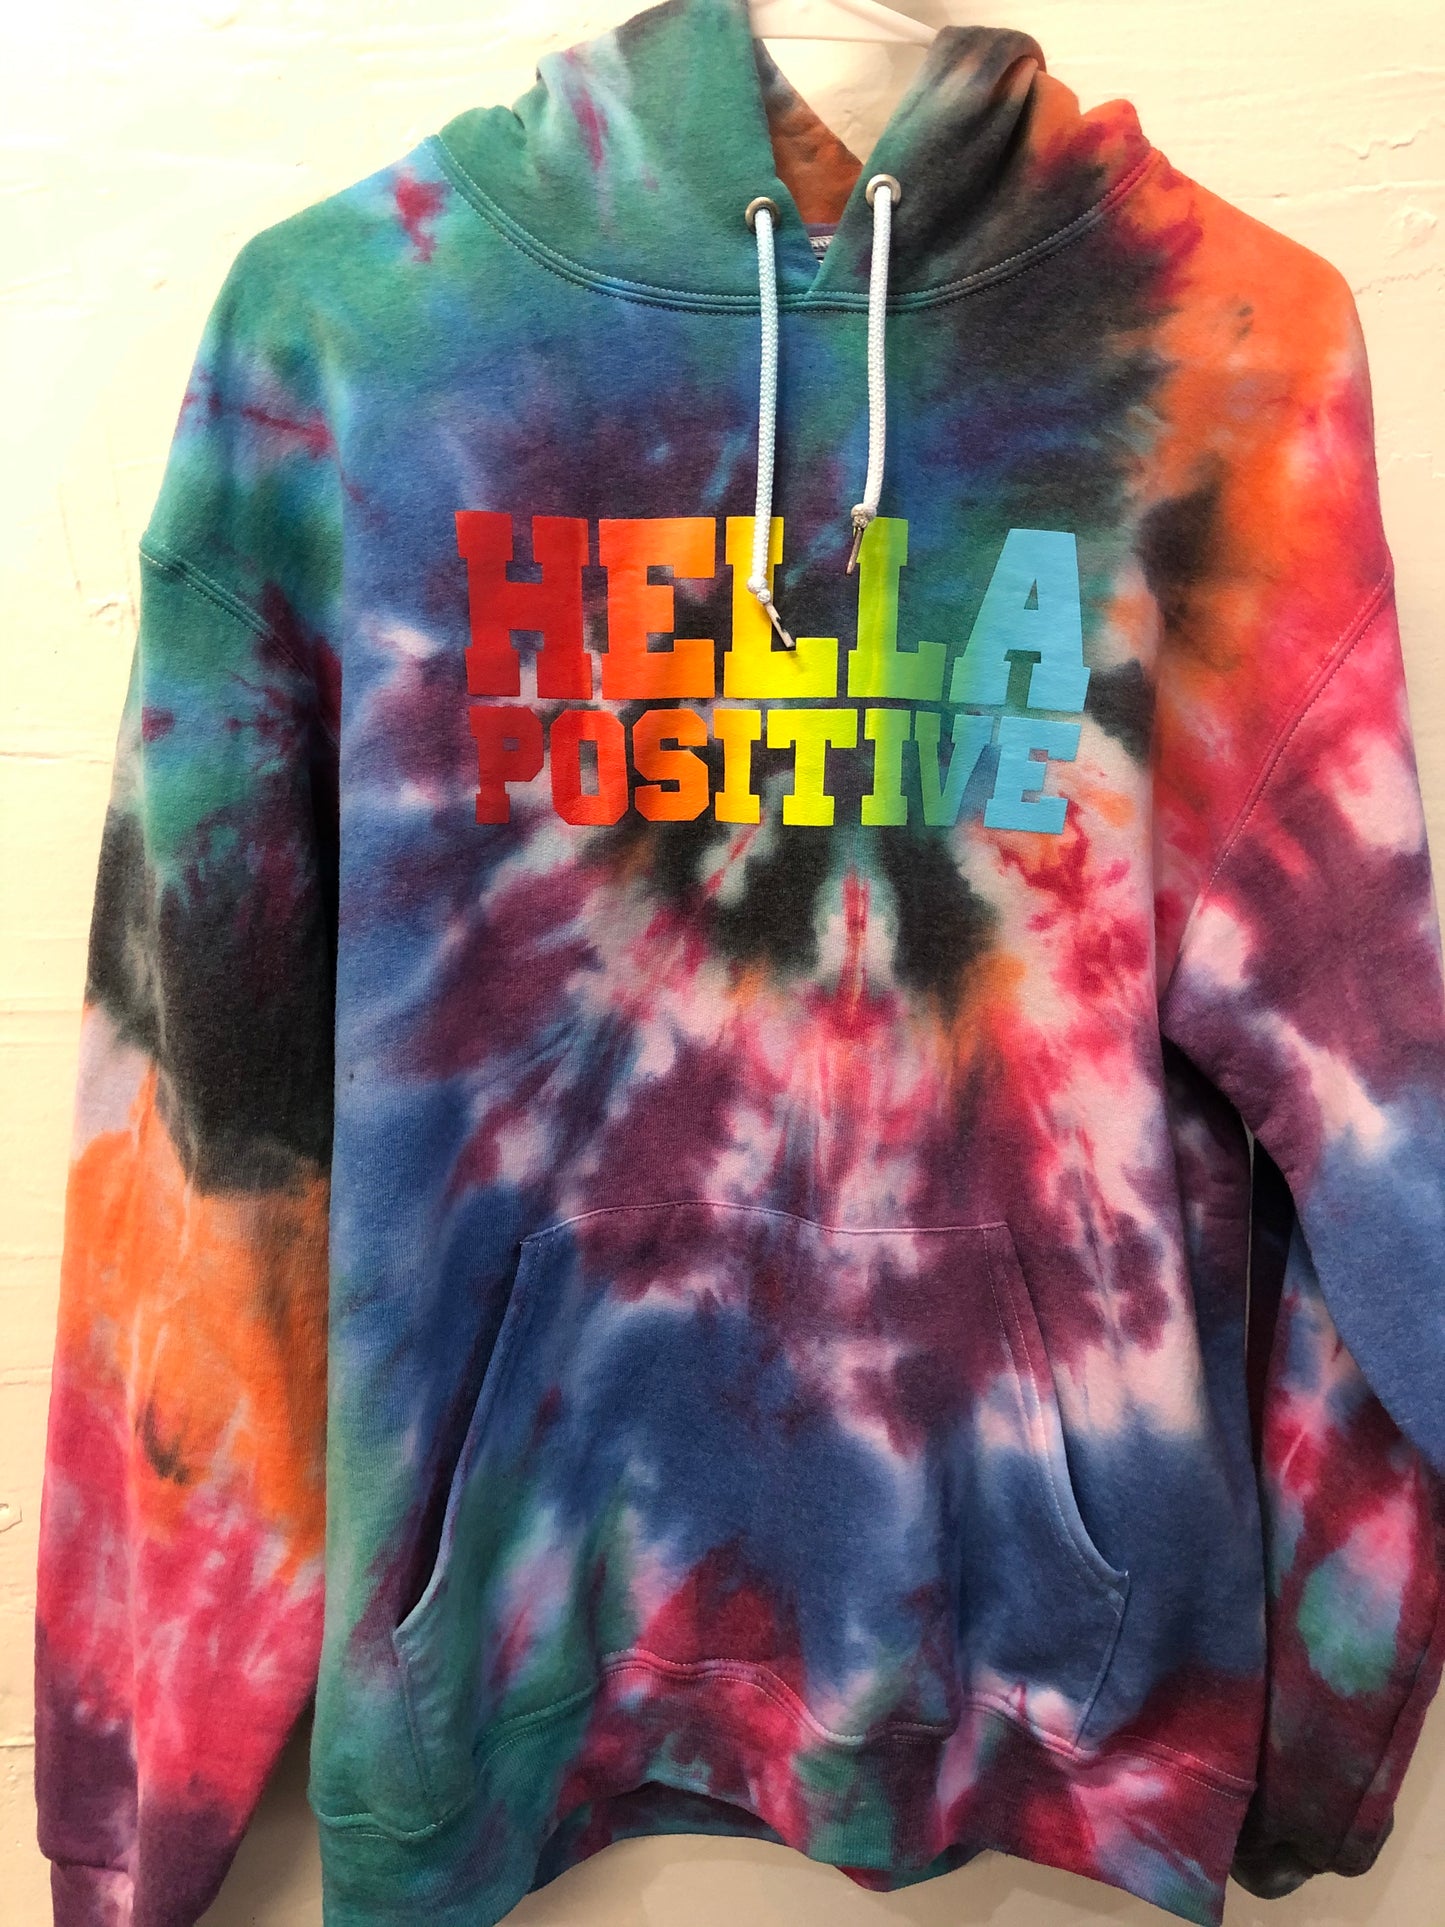 Hella Positive Tie Dye Exclusive - Medium